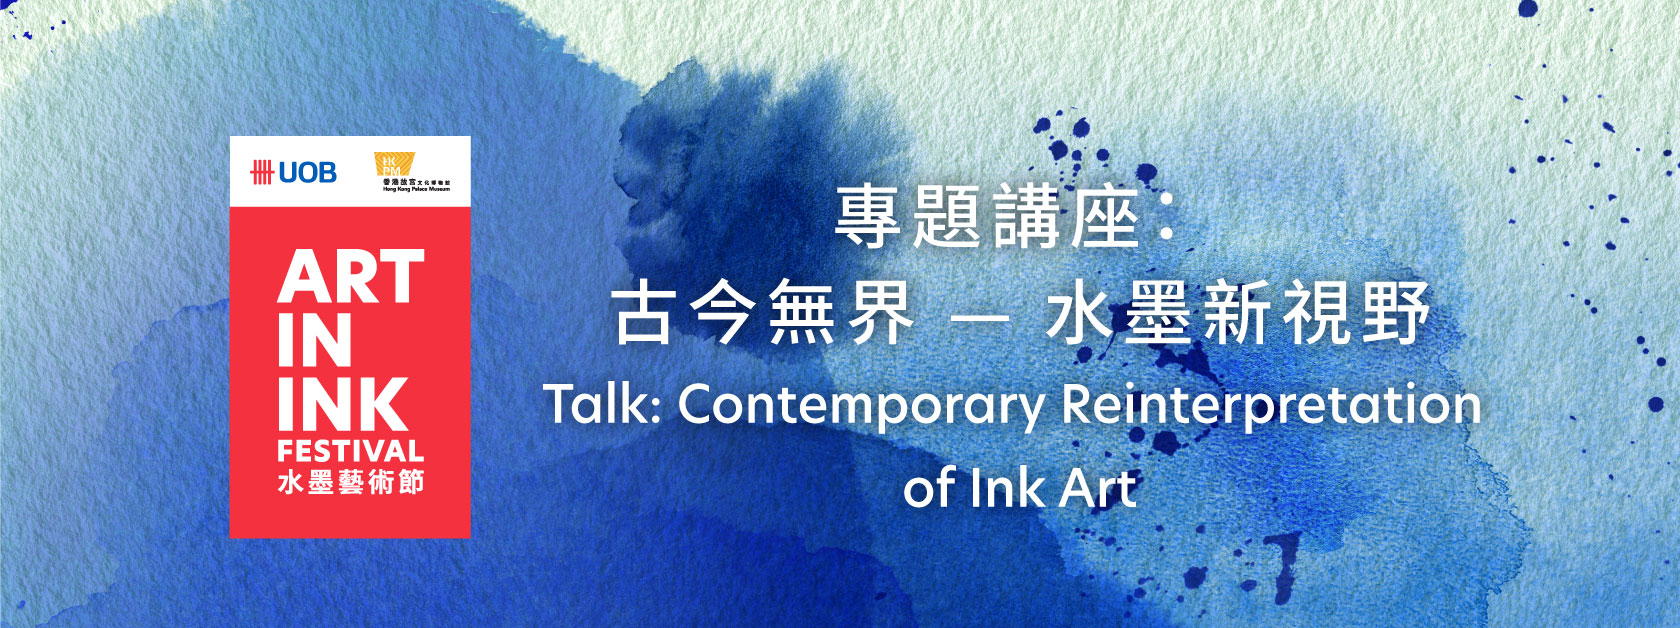 Talk: Contemporary Reinterpretation of Ink Art